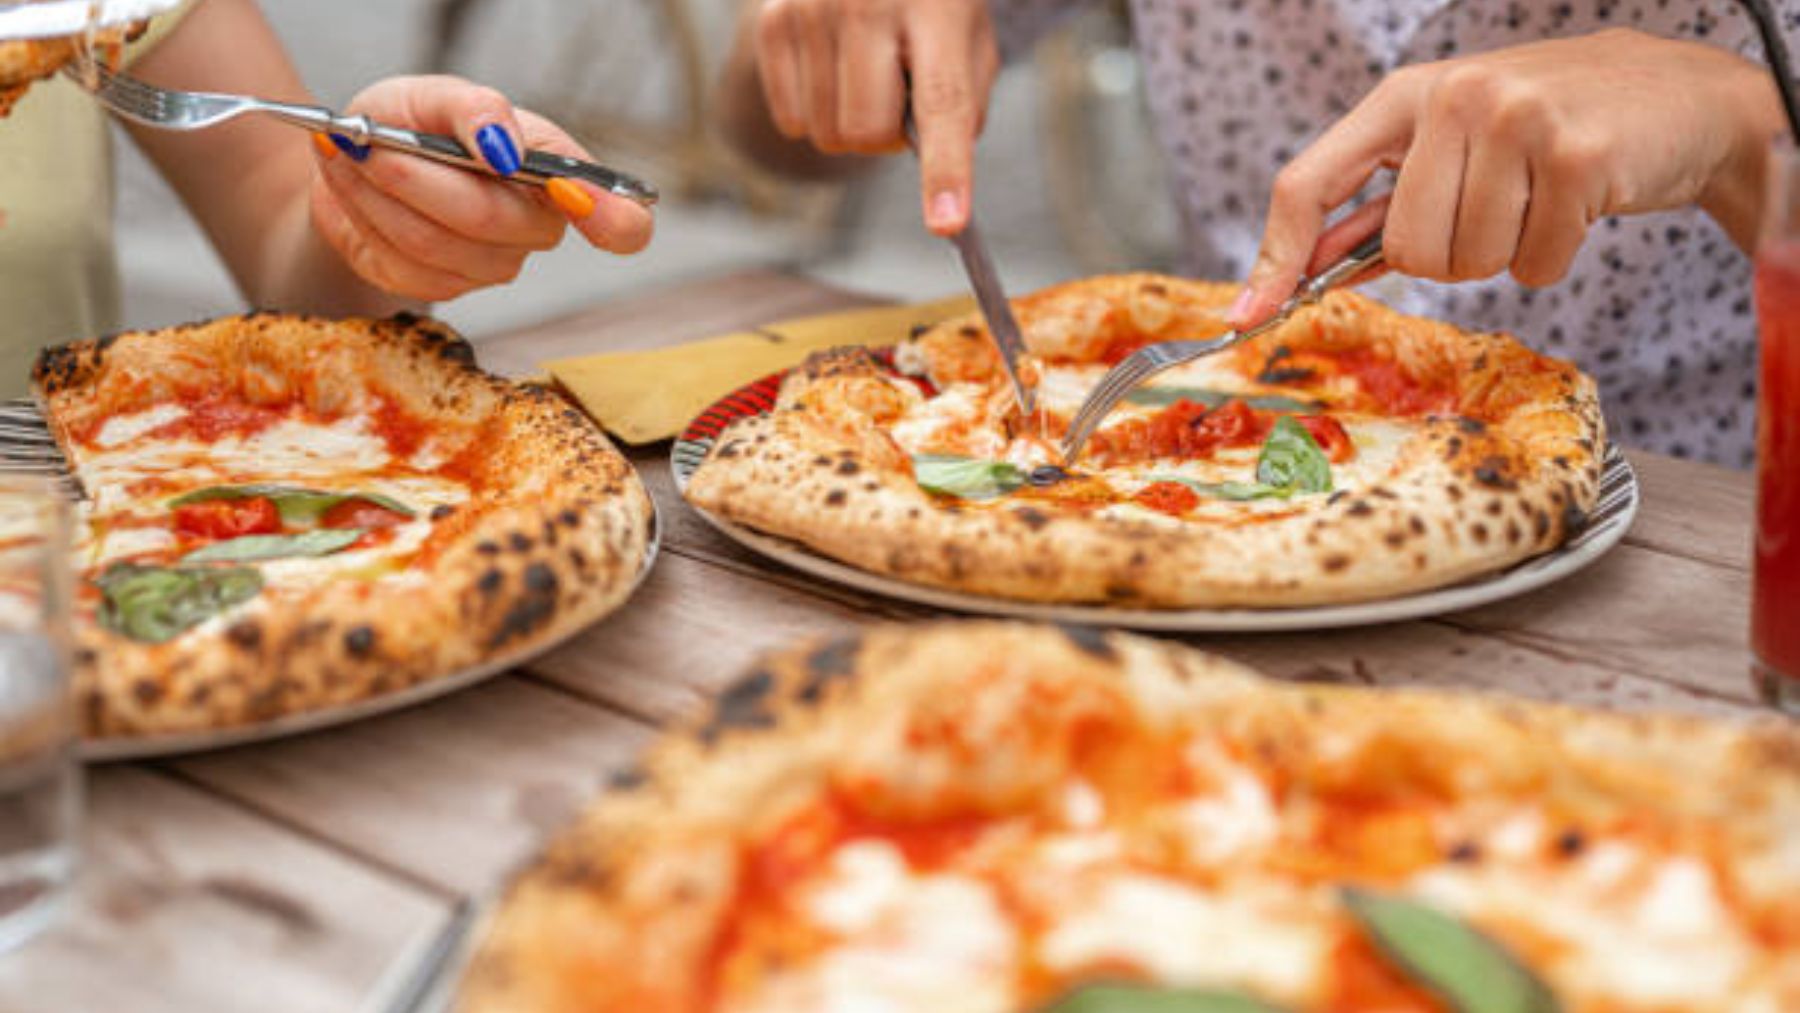 La forma correcta de cortar la pizza cuando la comes no es con cuchillo y tenedor